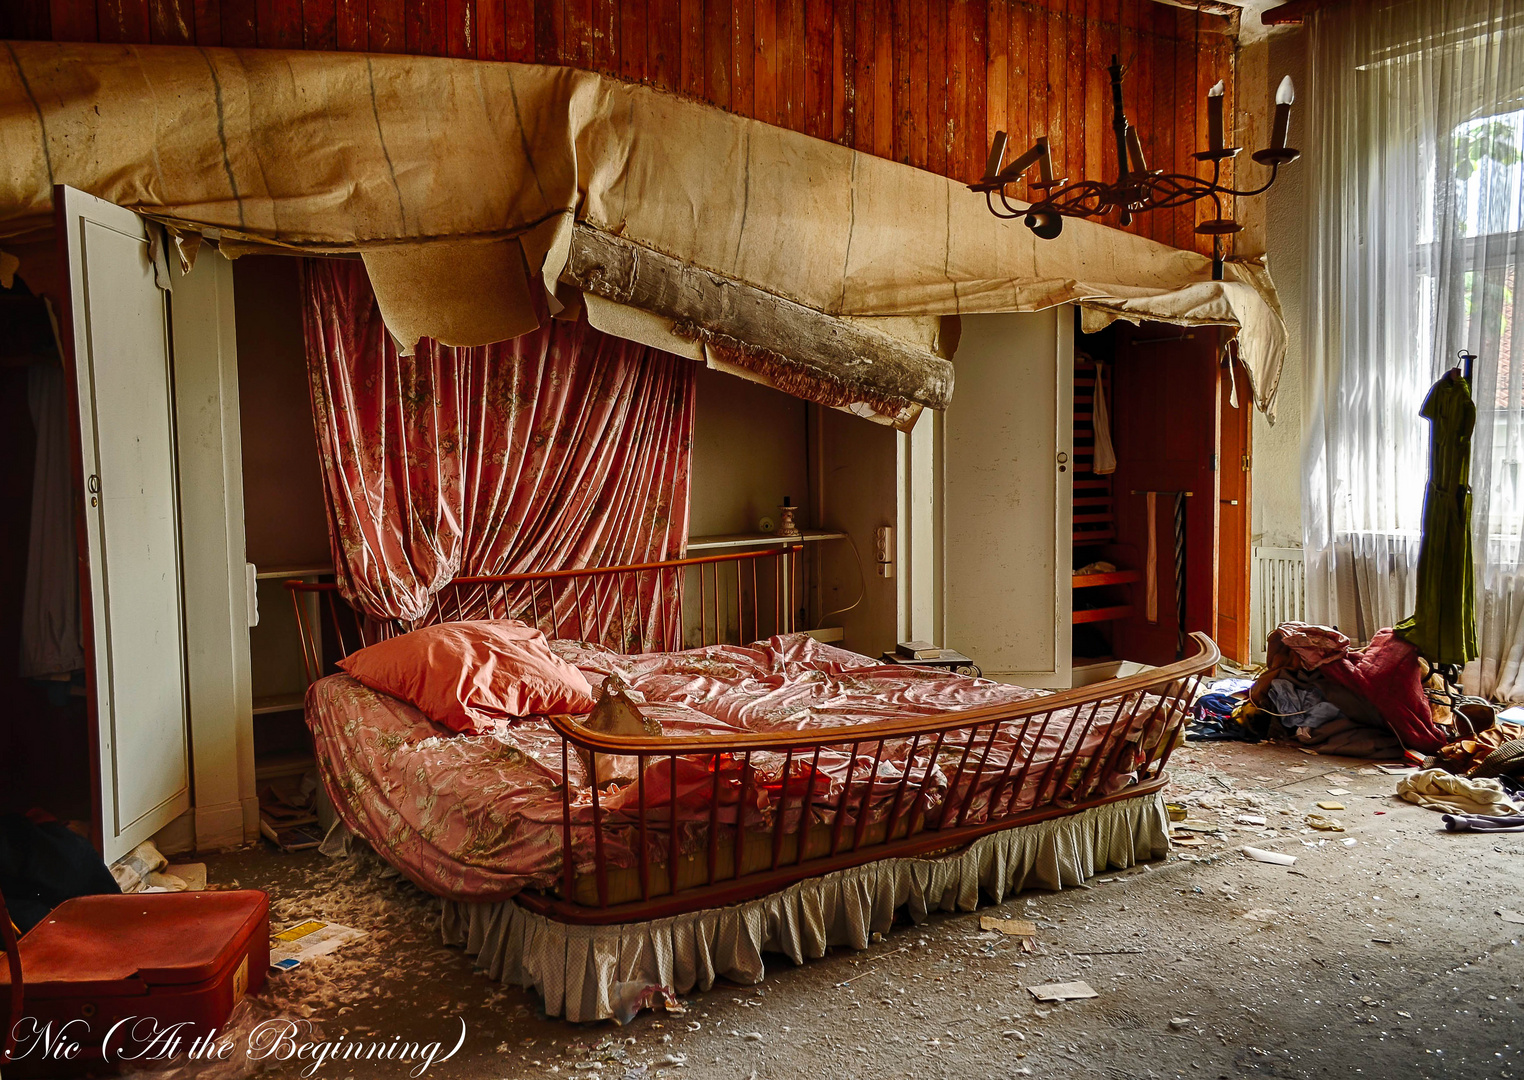 Das berühmte Schlafzimmer - ein Traum in rosé